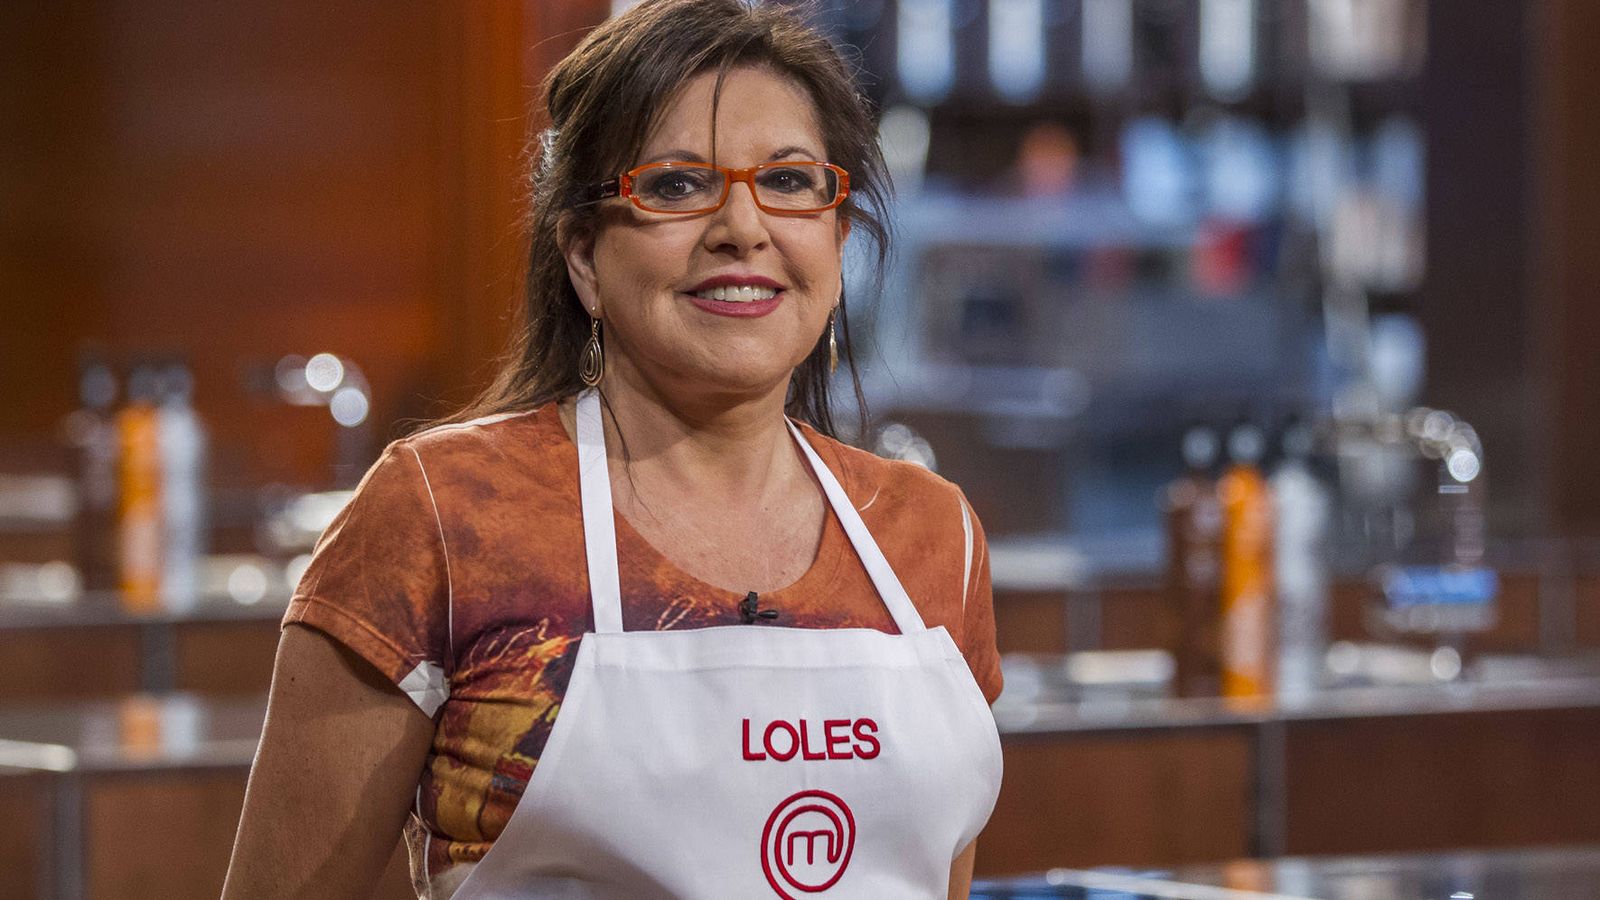 Foto: Loles León en las cocinas de 'MasterChef Celebrity'